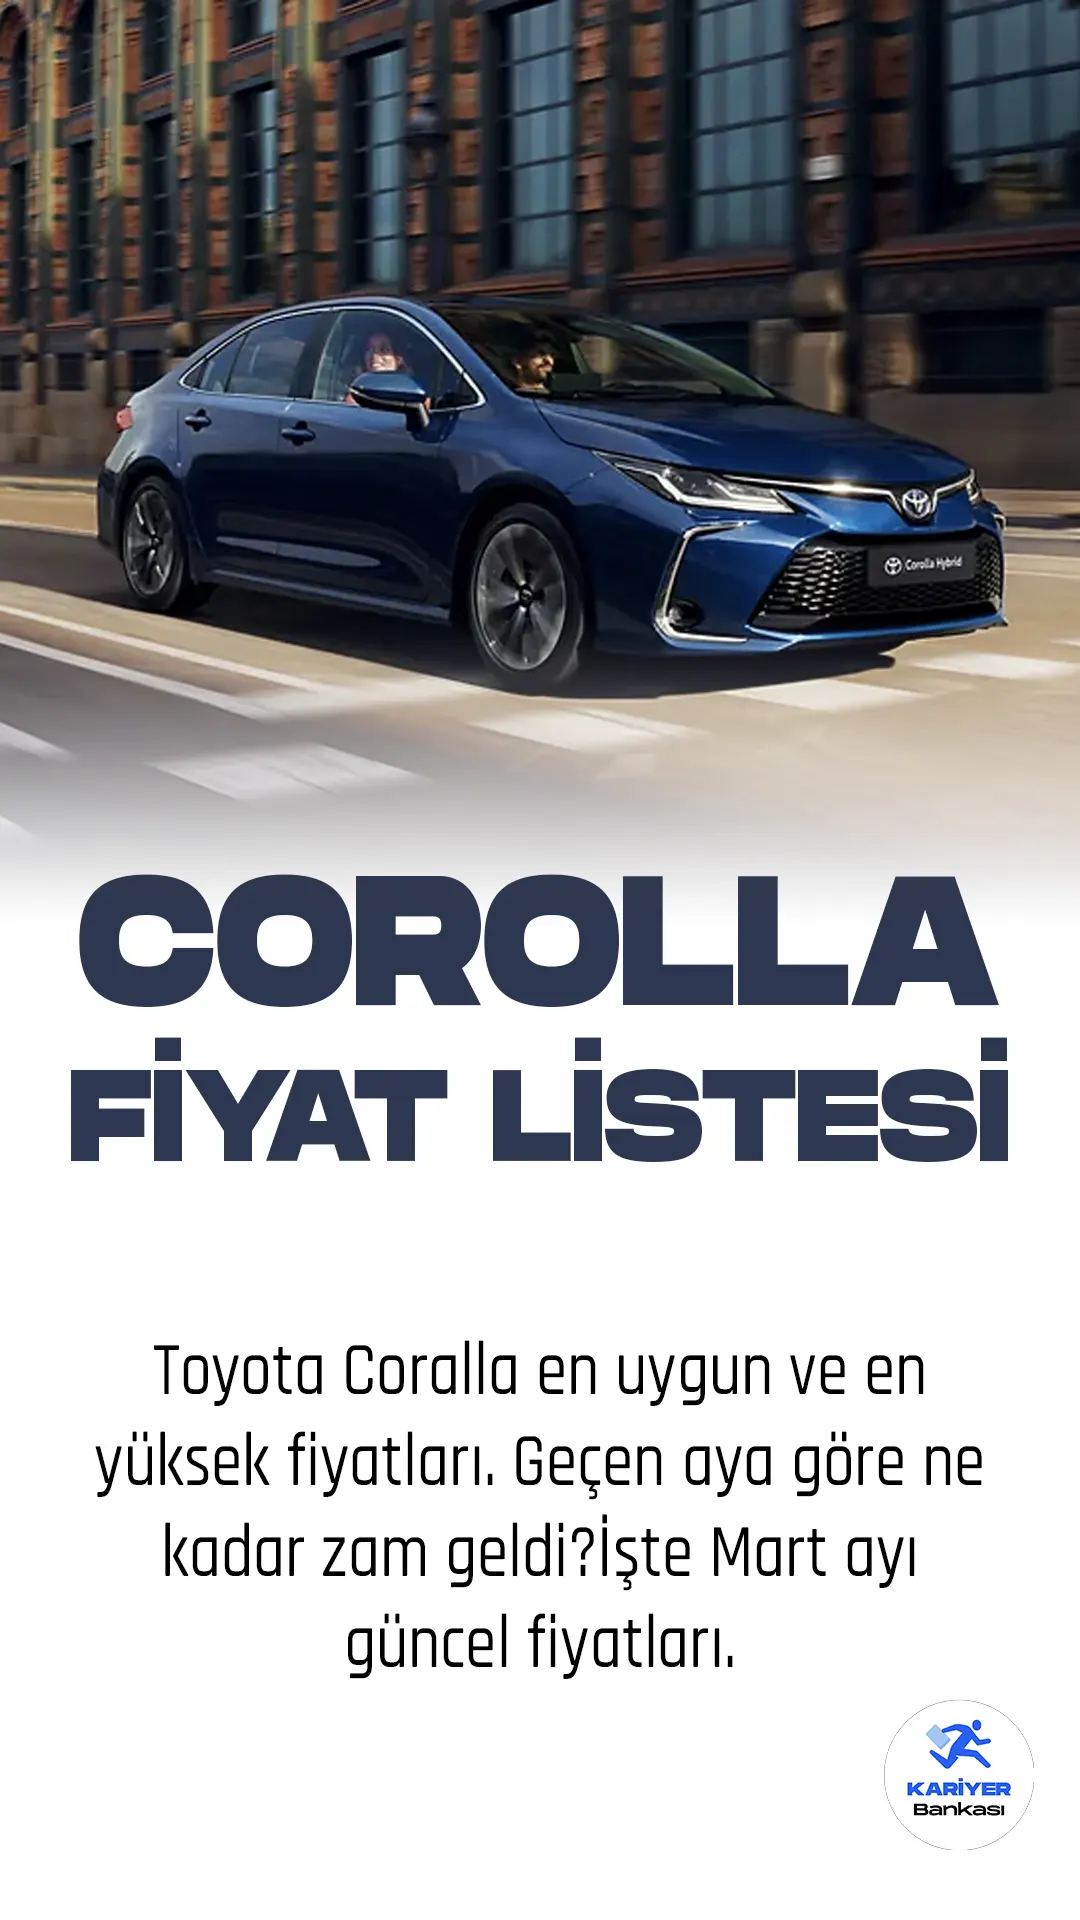 Toyota Corolla Fiyat Listesi yayımlandı!Toyota Corolla, dünyanın en popüler otomobil modellerinden biridir. 2021 yılı için yenilenen Corolla, daha modern bir tasarıma sahip olmasının yanı sıra, daha fazla güvenlik ve konfor özellikleri sunuyor.